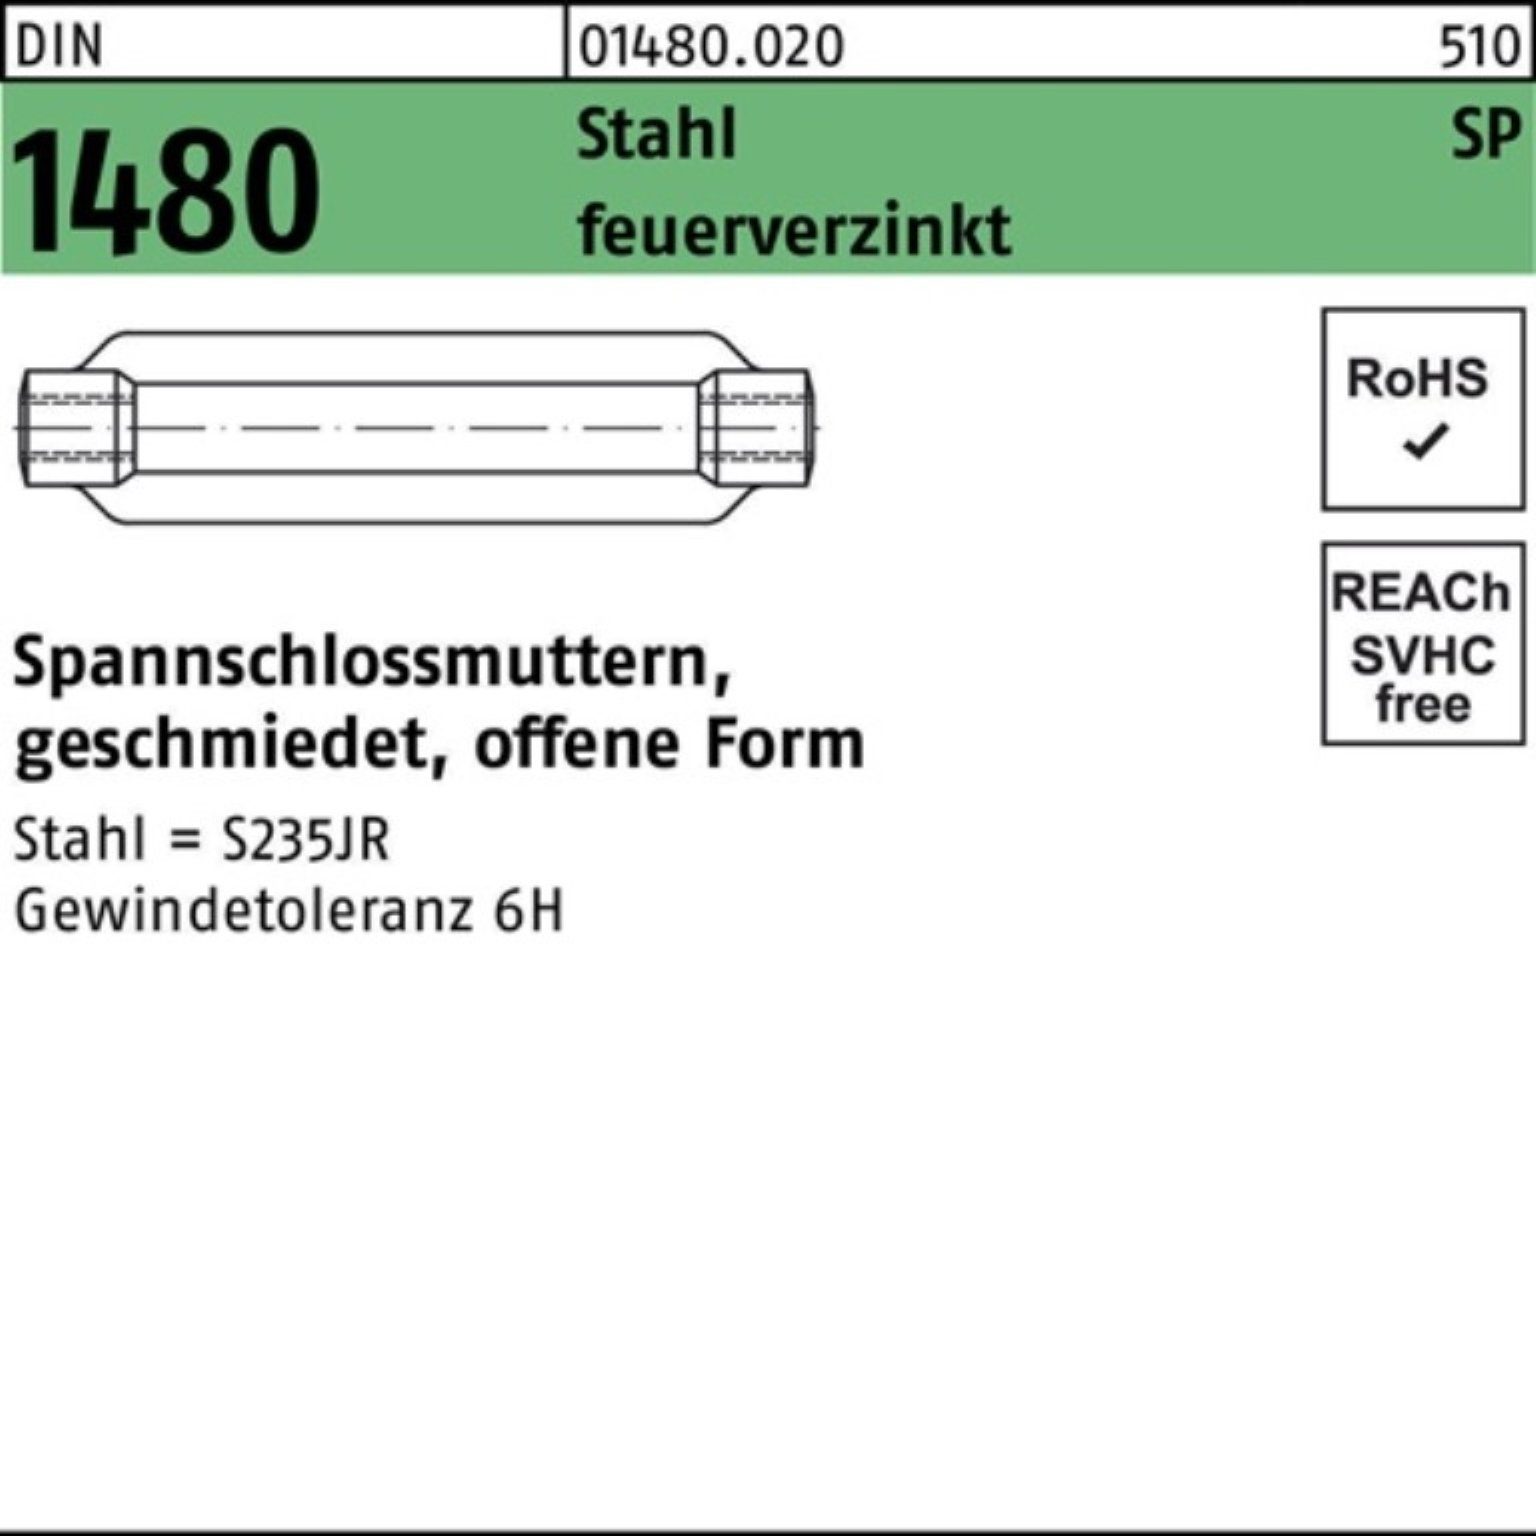 Stahl Reyher offen feuerver DIN M24/255 Spannschlossmutter 1480 Spannschloss Pack SP 100er